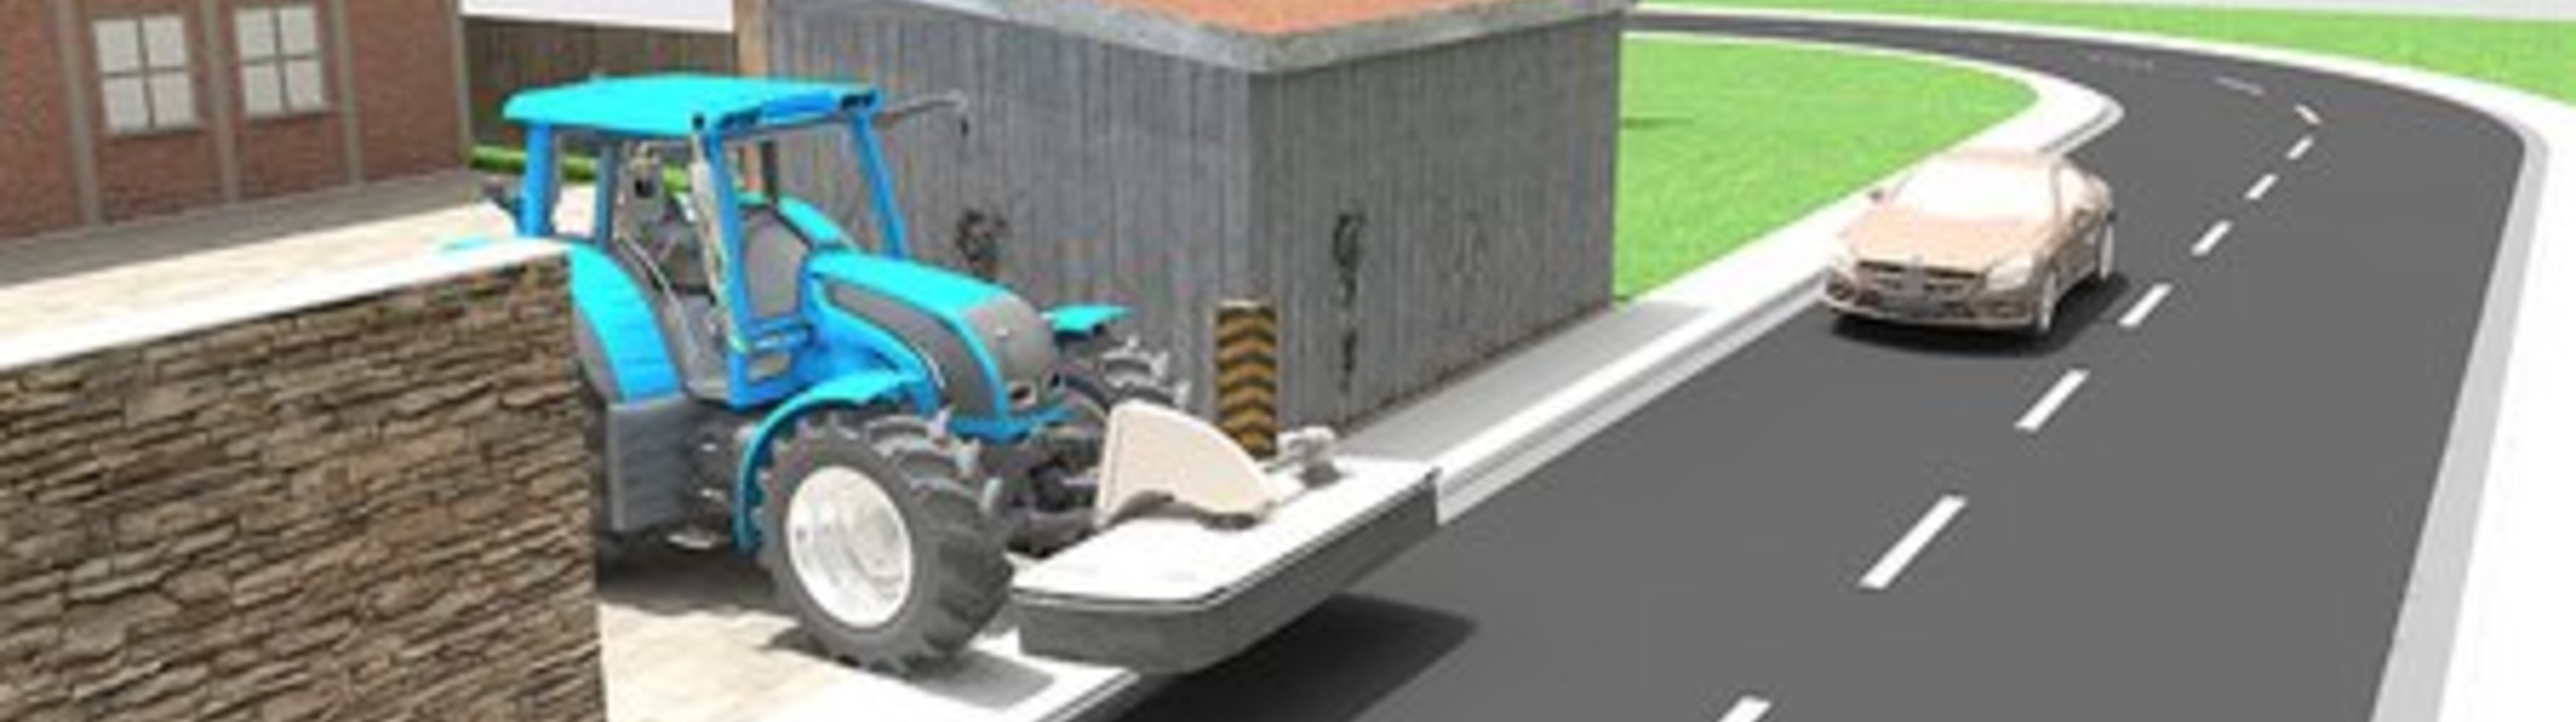 Traktor mit Frontanbau in schematischer Darstellung. Bild zeigt den Frontanbau aus einer Ausfahrt in die Straße schauend mit annäherndem Auto